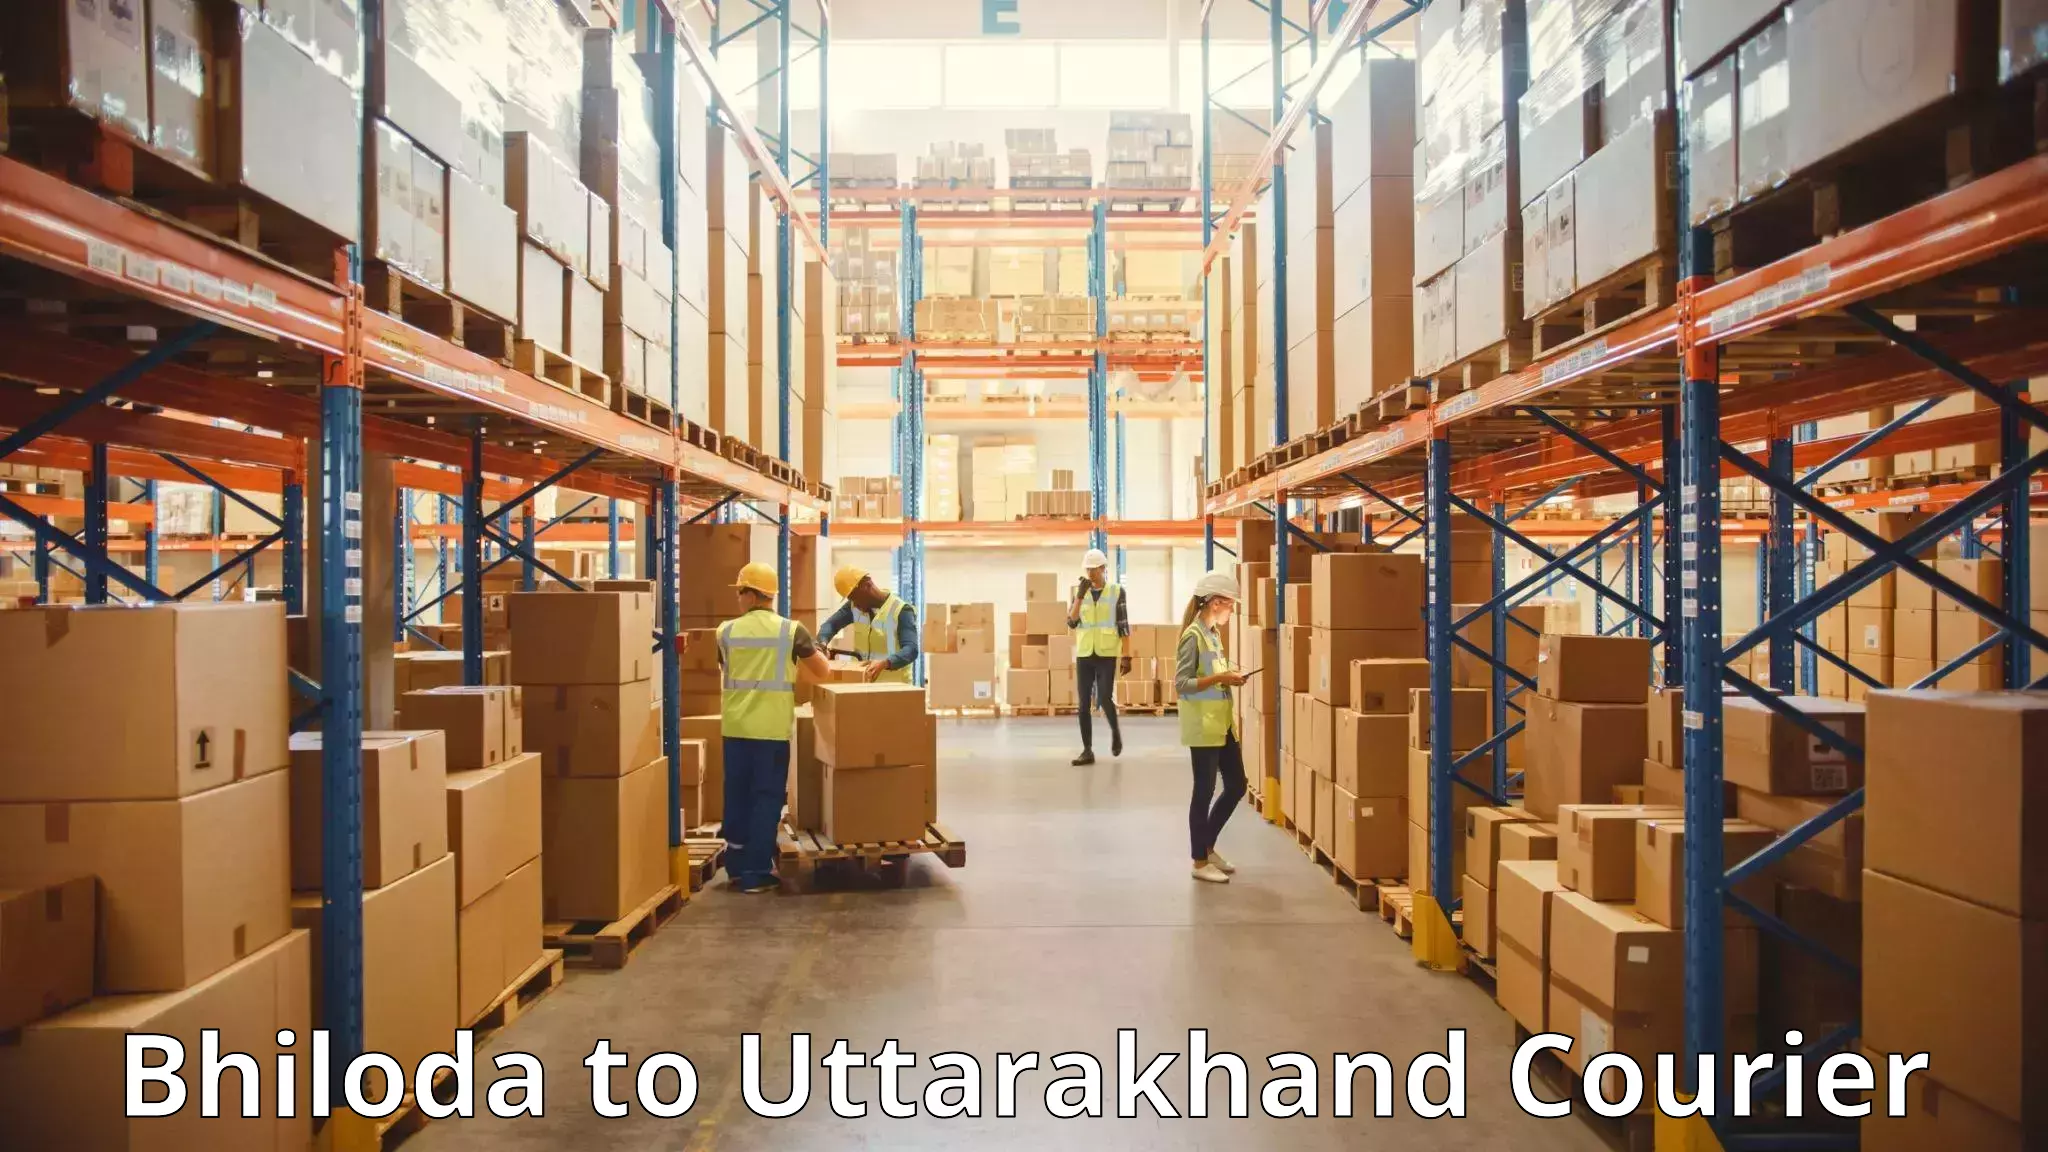 Luggage shipment specialists Bhiloda to Uttarakhand